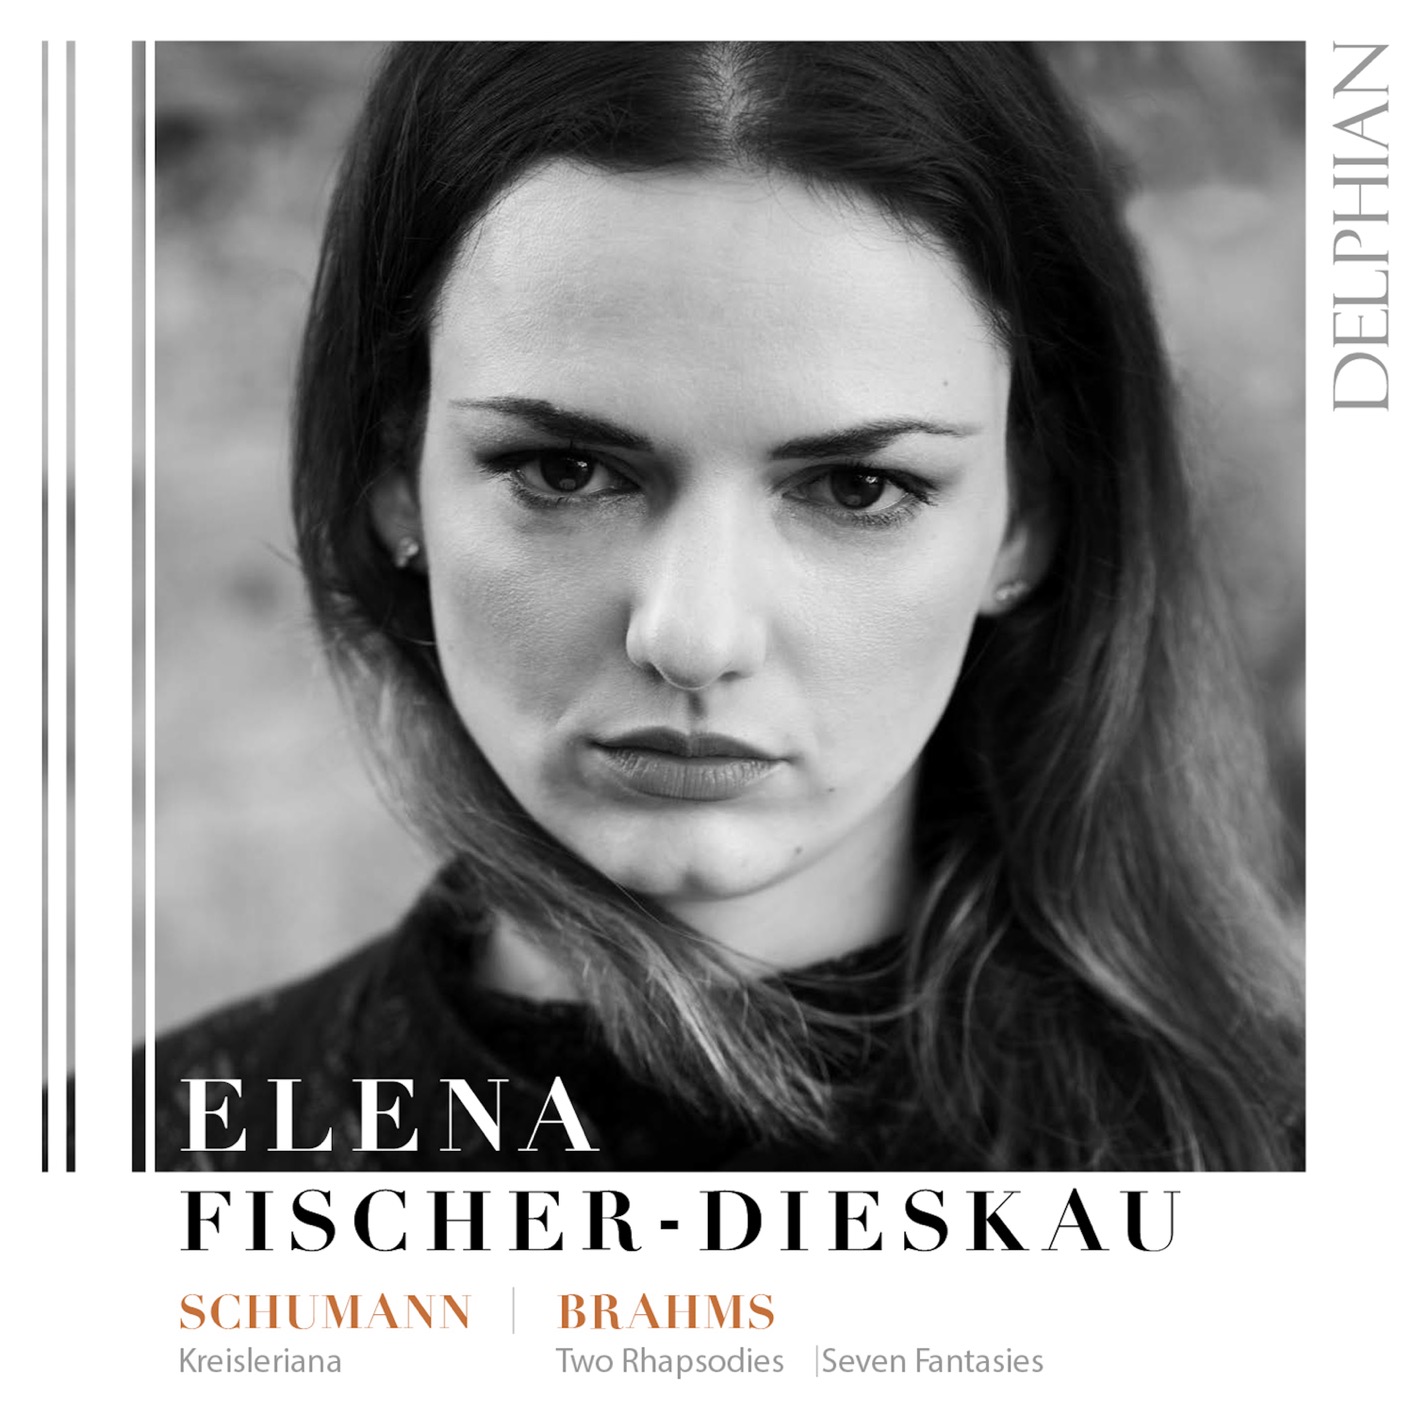 Elena Fischer-Dieskau – Schumann: Kreisleriana – Brahms: Two Rhapsodies, Seven Fantasies (2021) [FLAC 24bit/96kHz]